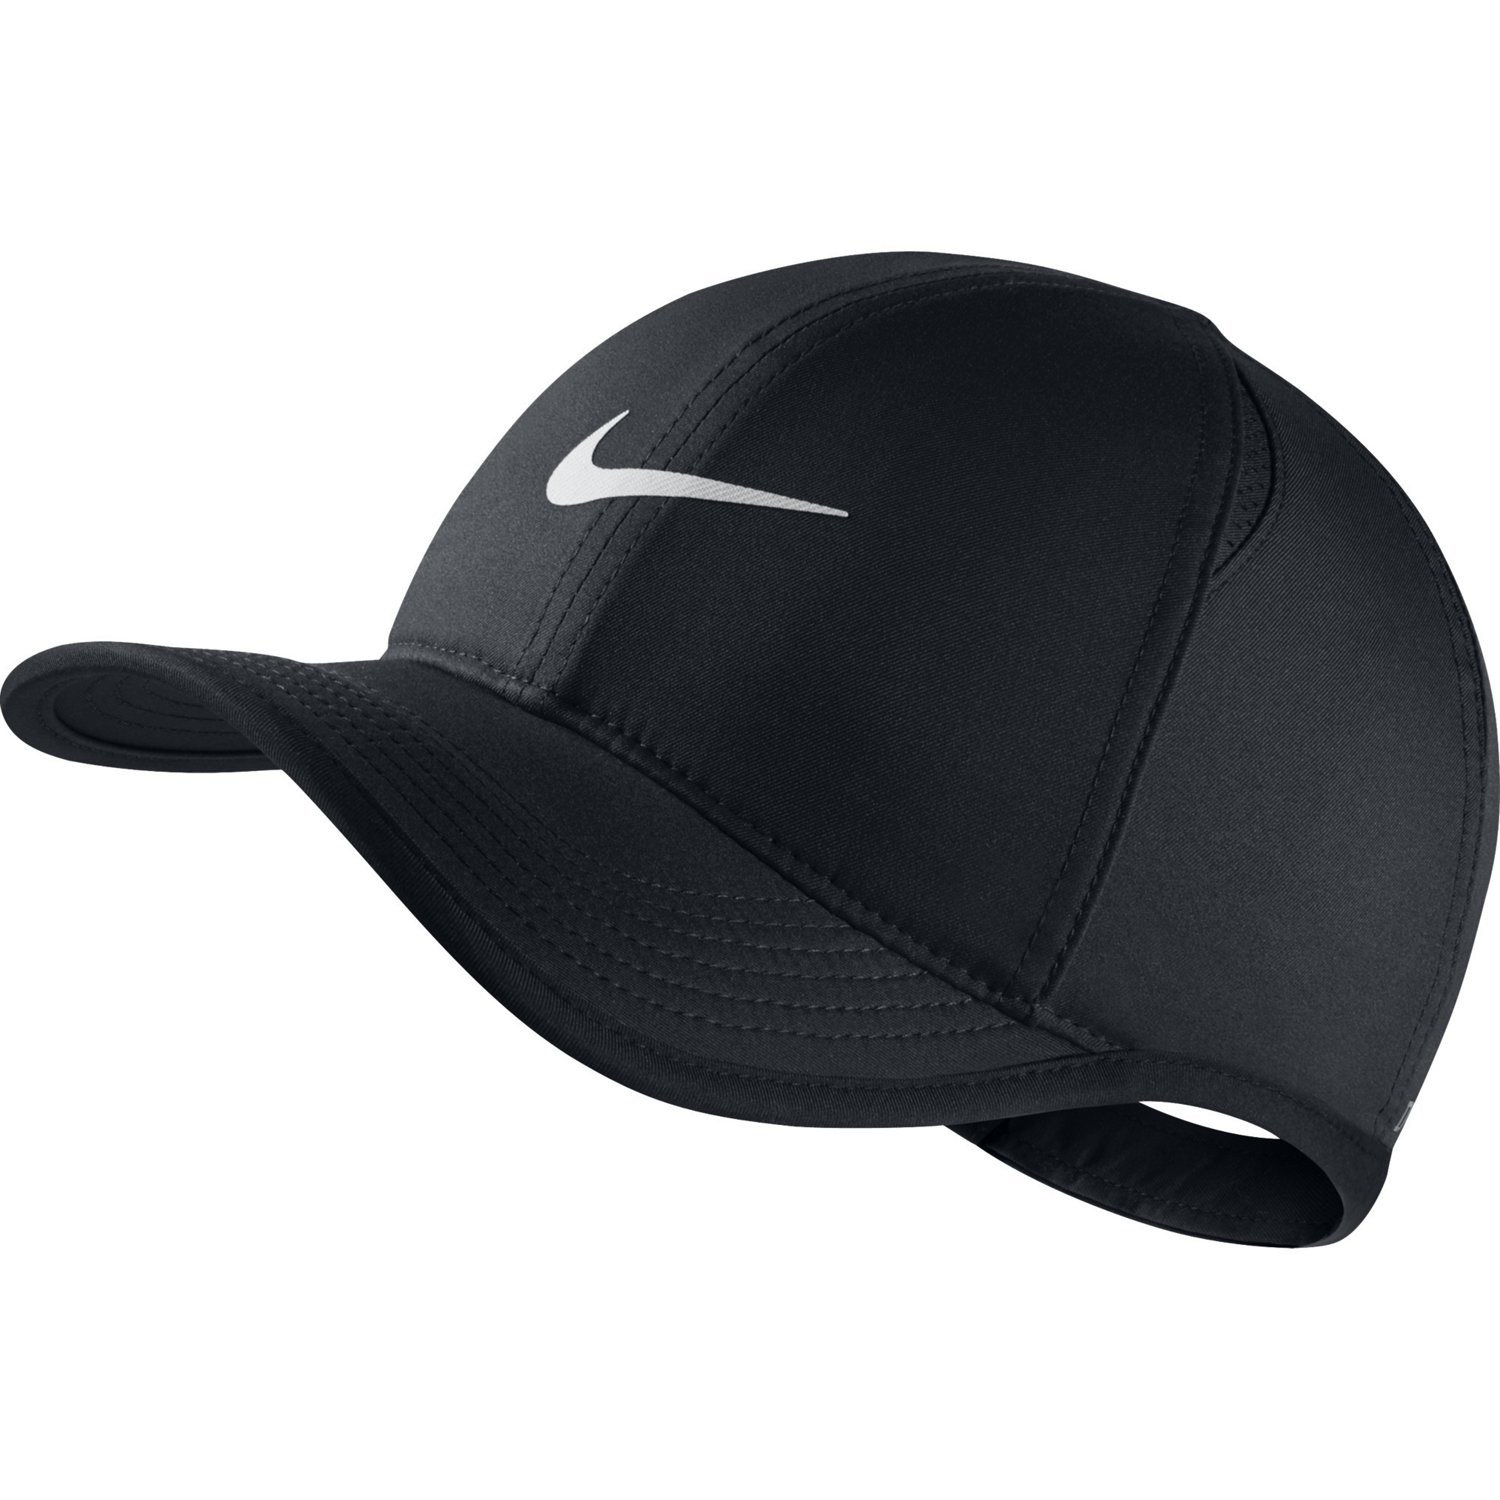 Nike New York Yankees Dri-Fit Vapor Adjustable Cap in Blue for Men